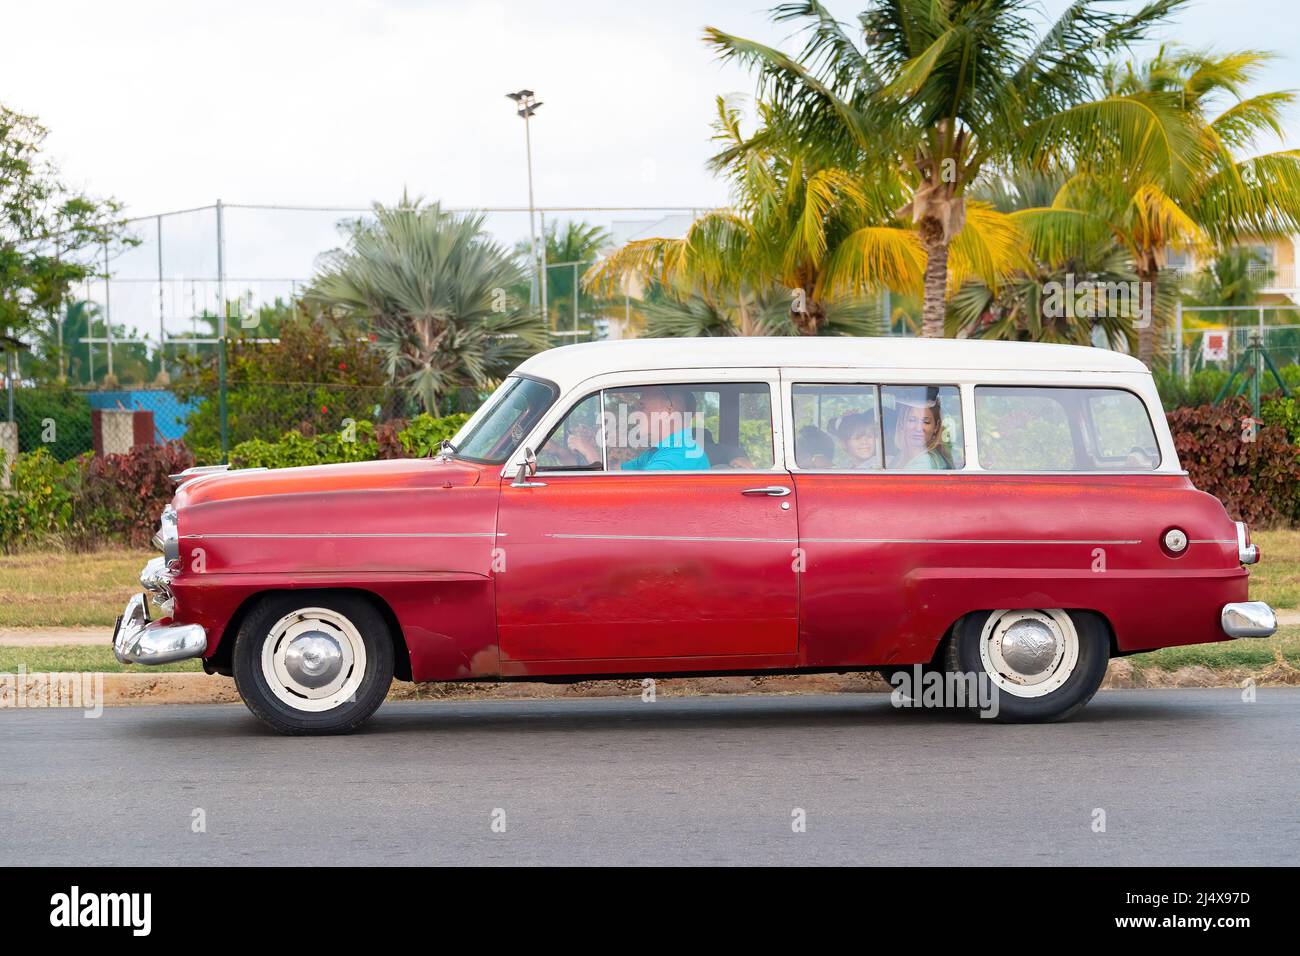 Ein altes, veraltetes amerikanisches Fahrzeug, das als Taxi im berühmten Stadtgebiet arbeitet. Die Stadt Varadero ist eines der meistbesuchten Reiseziele in Th Stockfoto